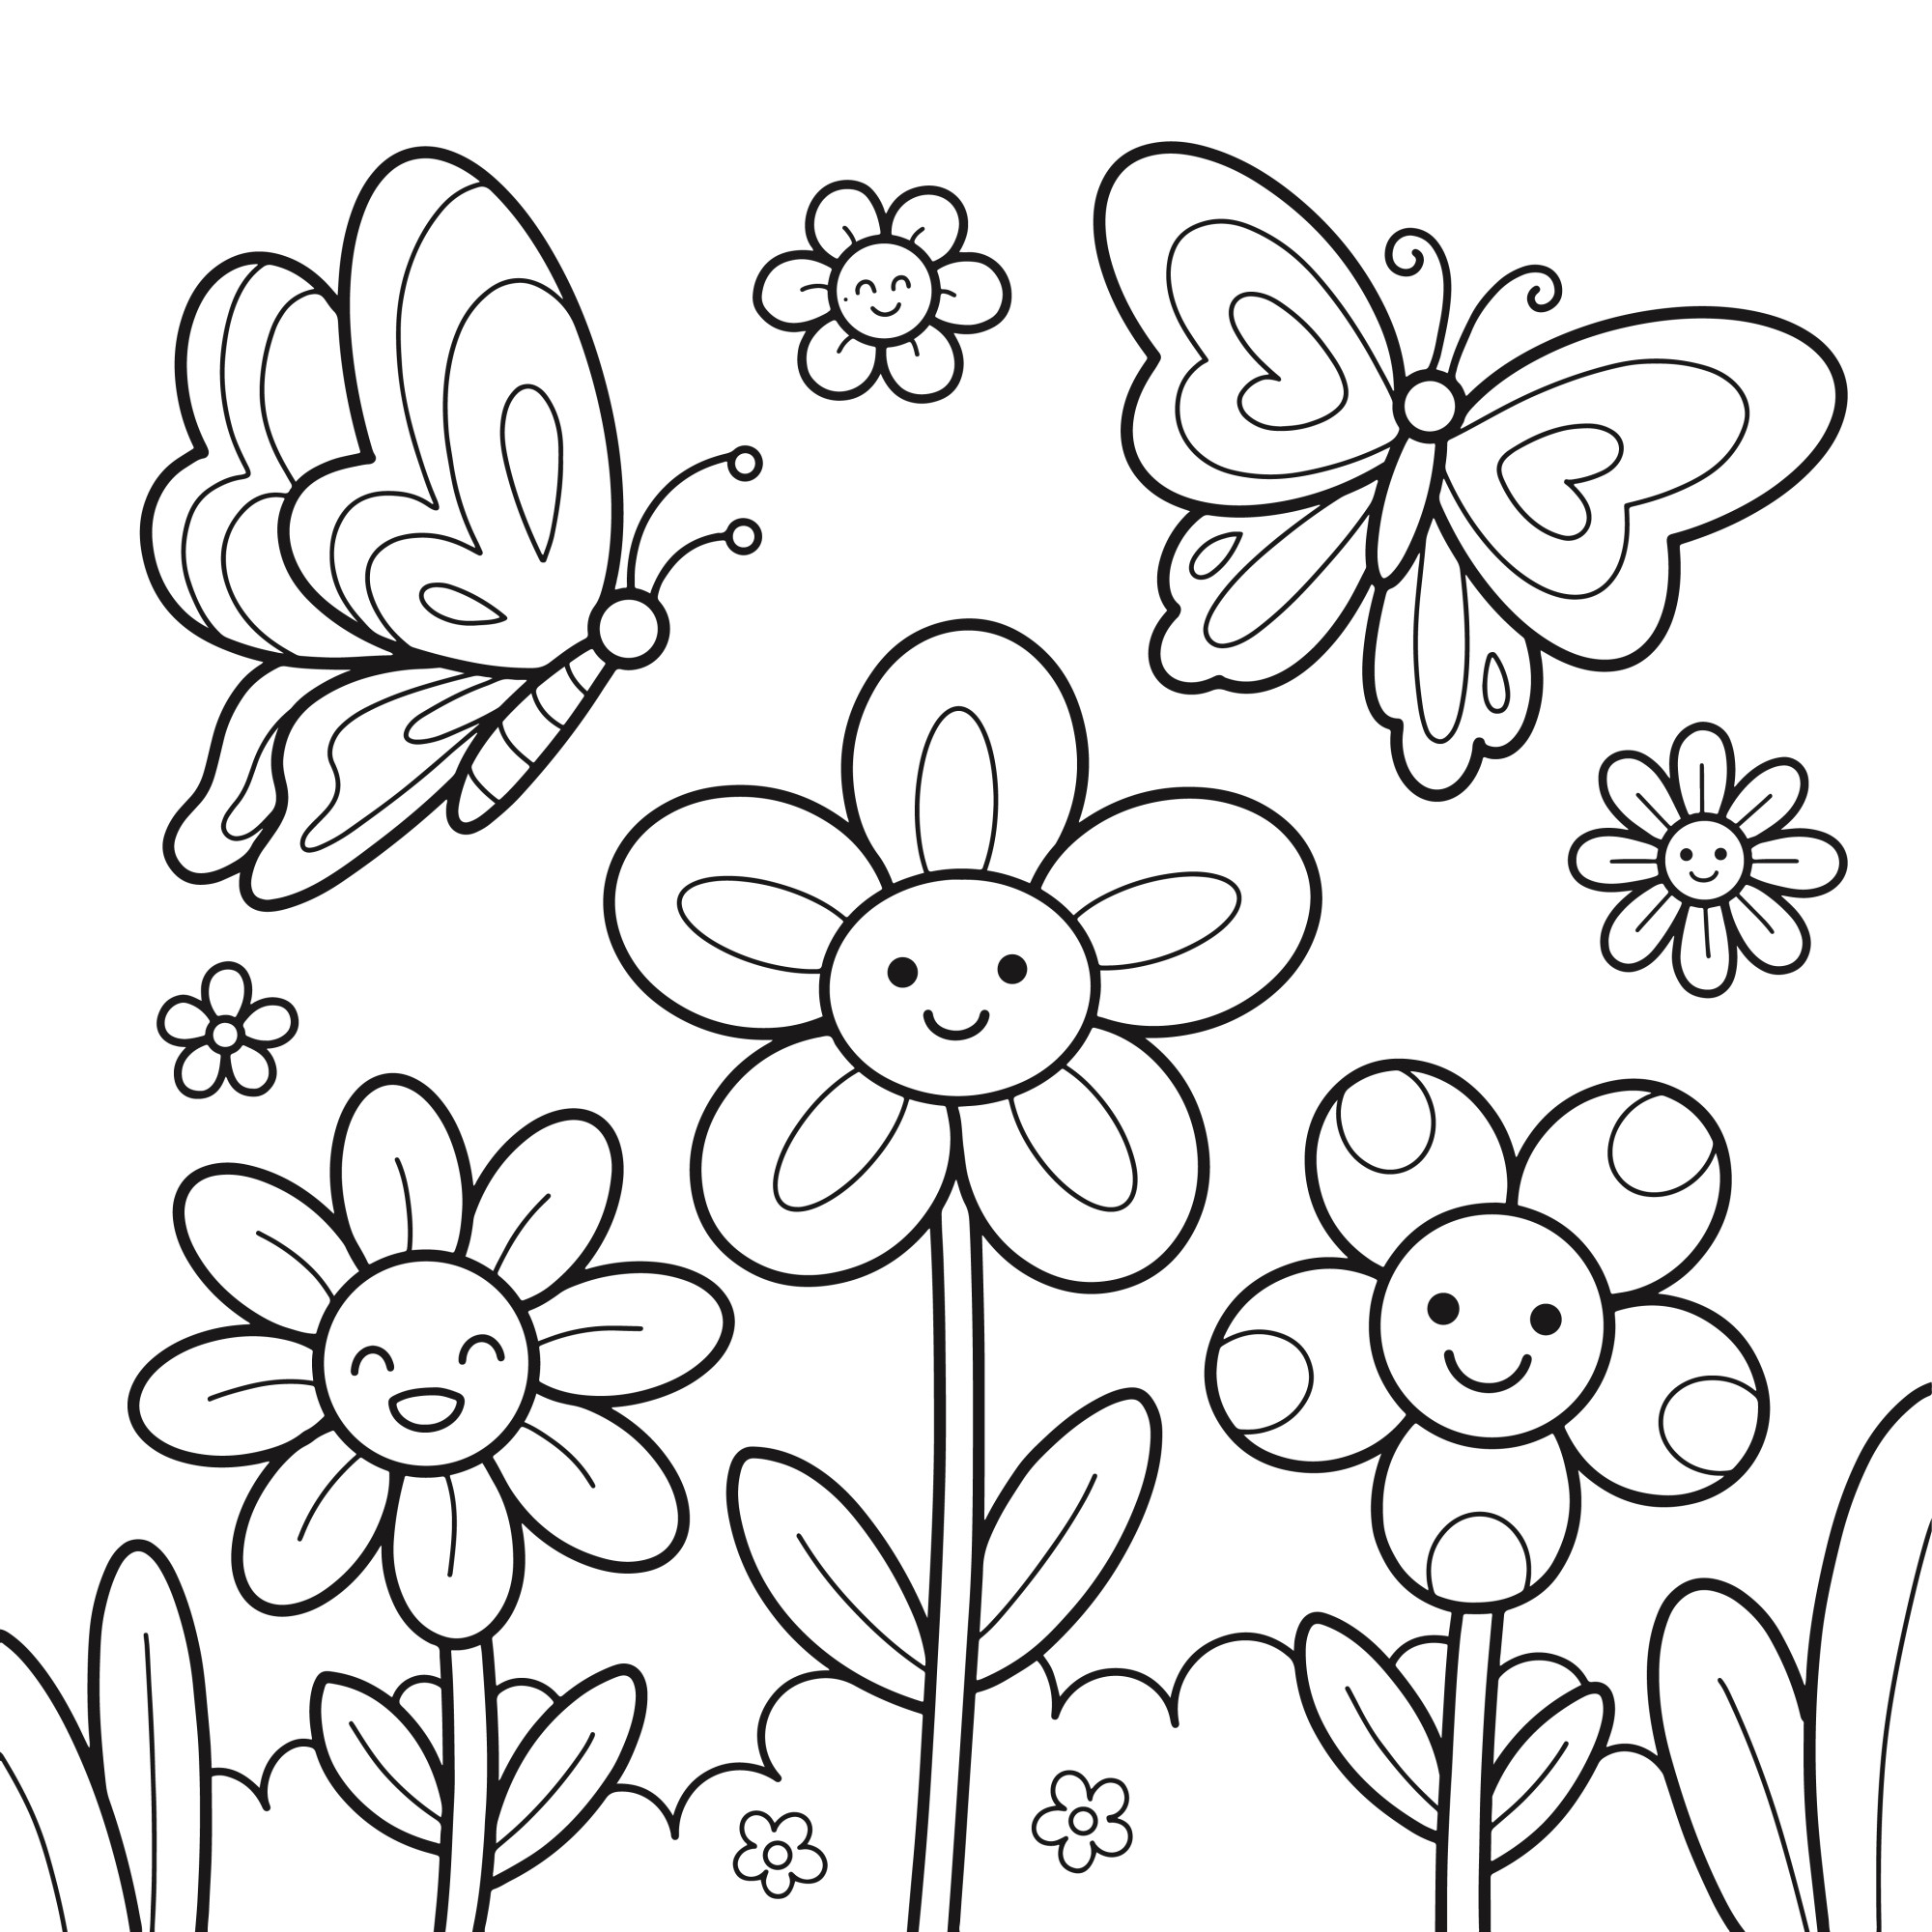 Раскраска для детей: мультяшные цветы с лицами и бабочки